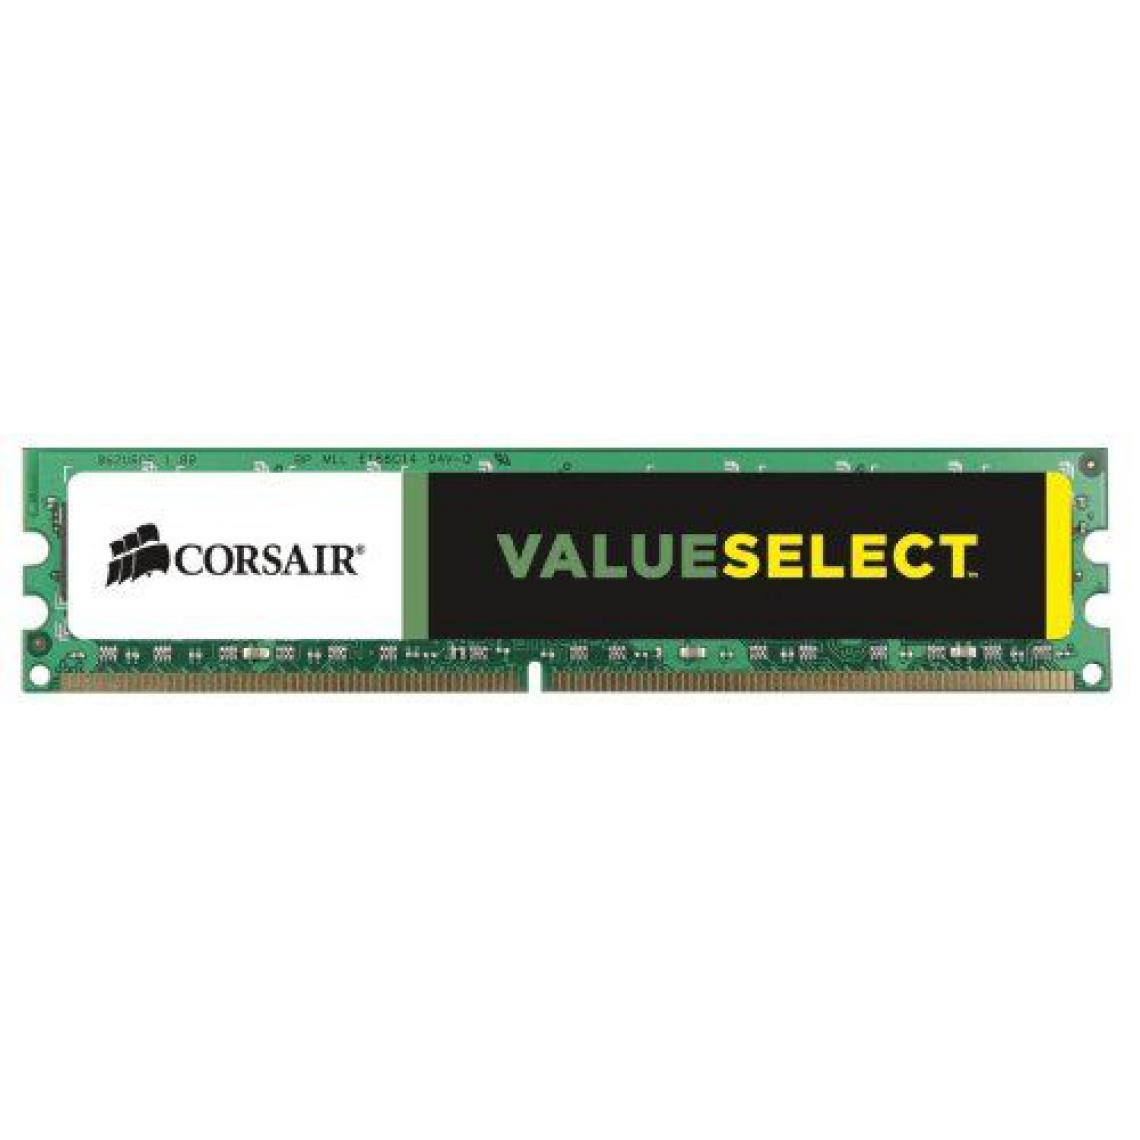 Corsair - Corsair CMV4GX3M1A1600C11 Value Select 4GB (1x4GB) DDR3 1600 Mhz CL11 Mémoire pour ordinateur de bureau - RAM PC Fixe